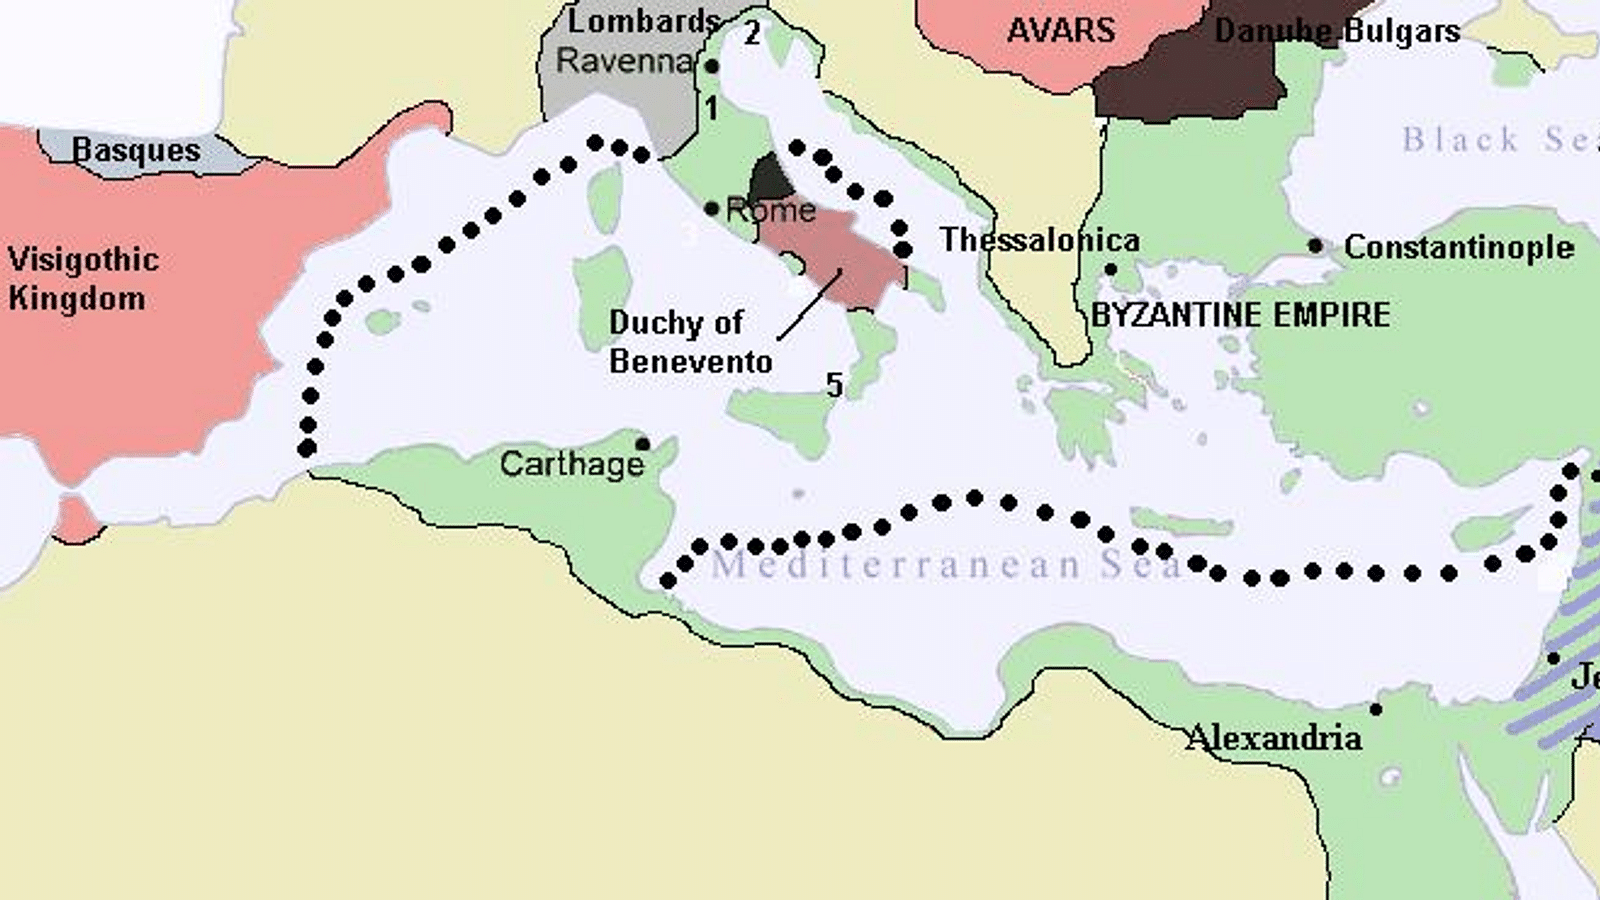 Ancient Armenia - World History Encyclopedia